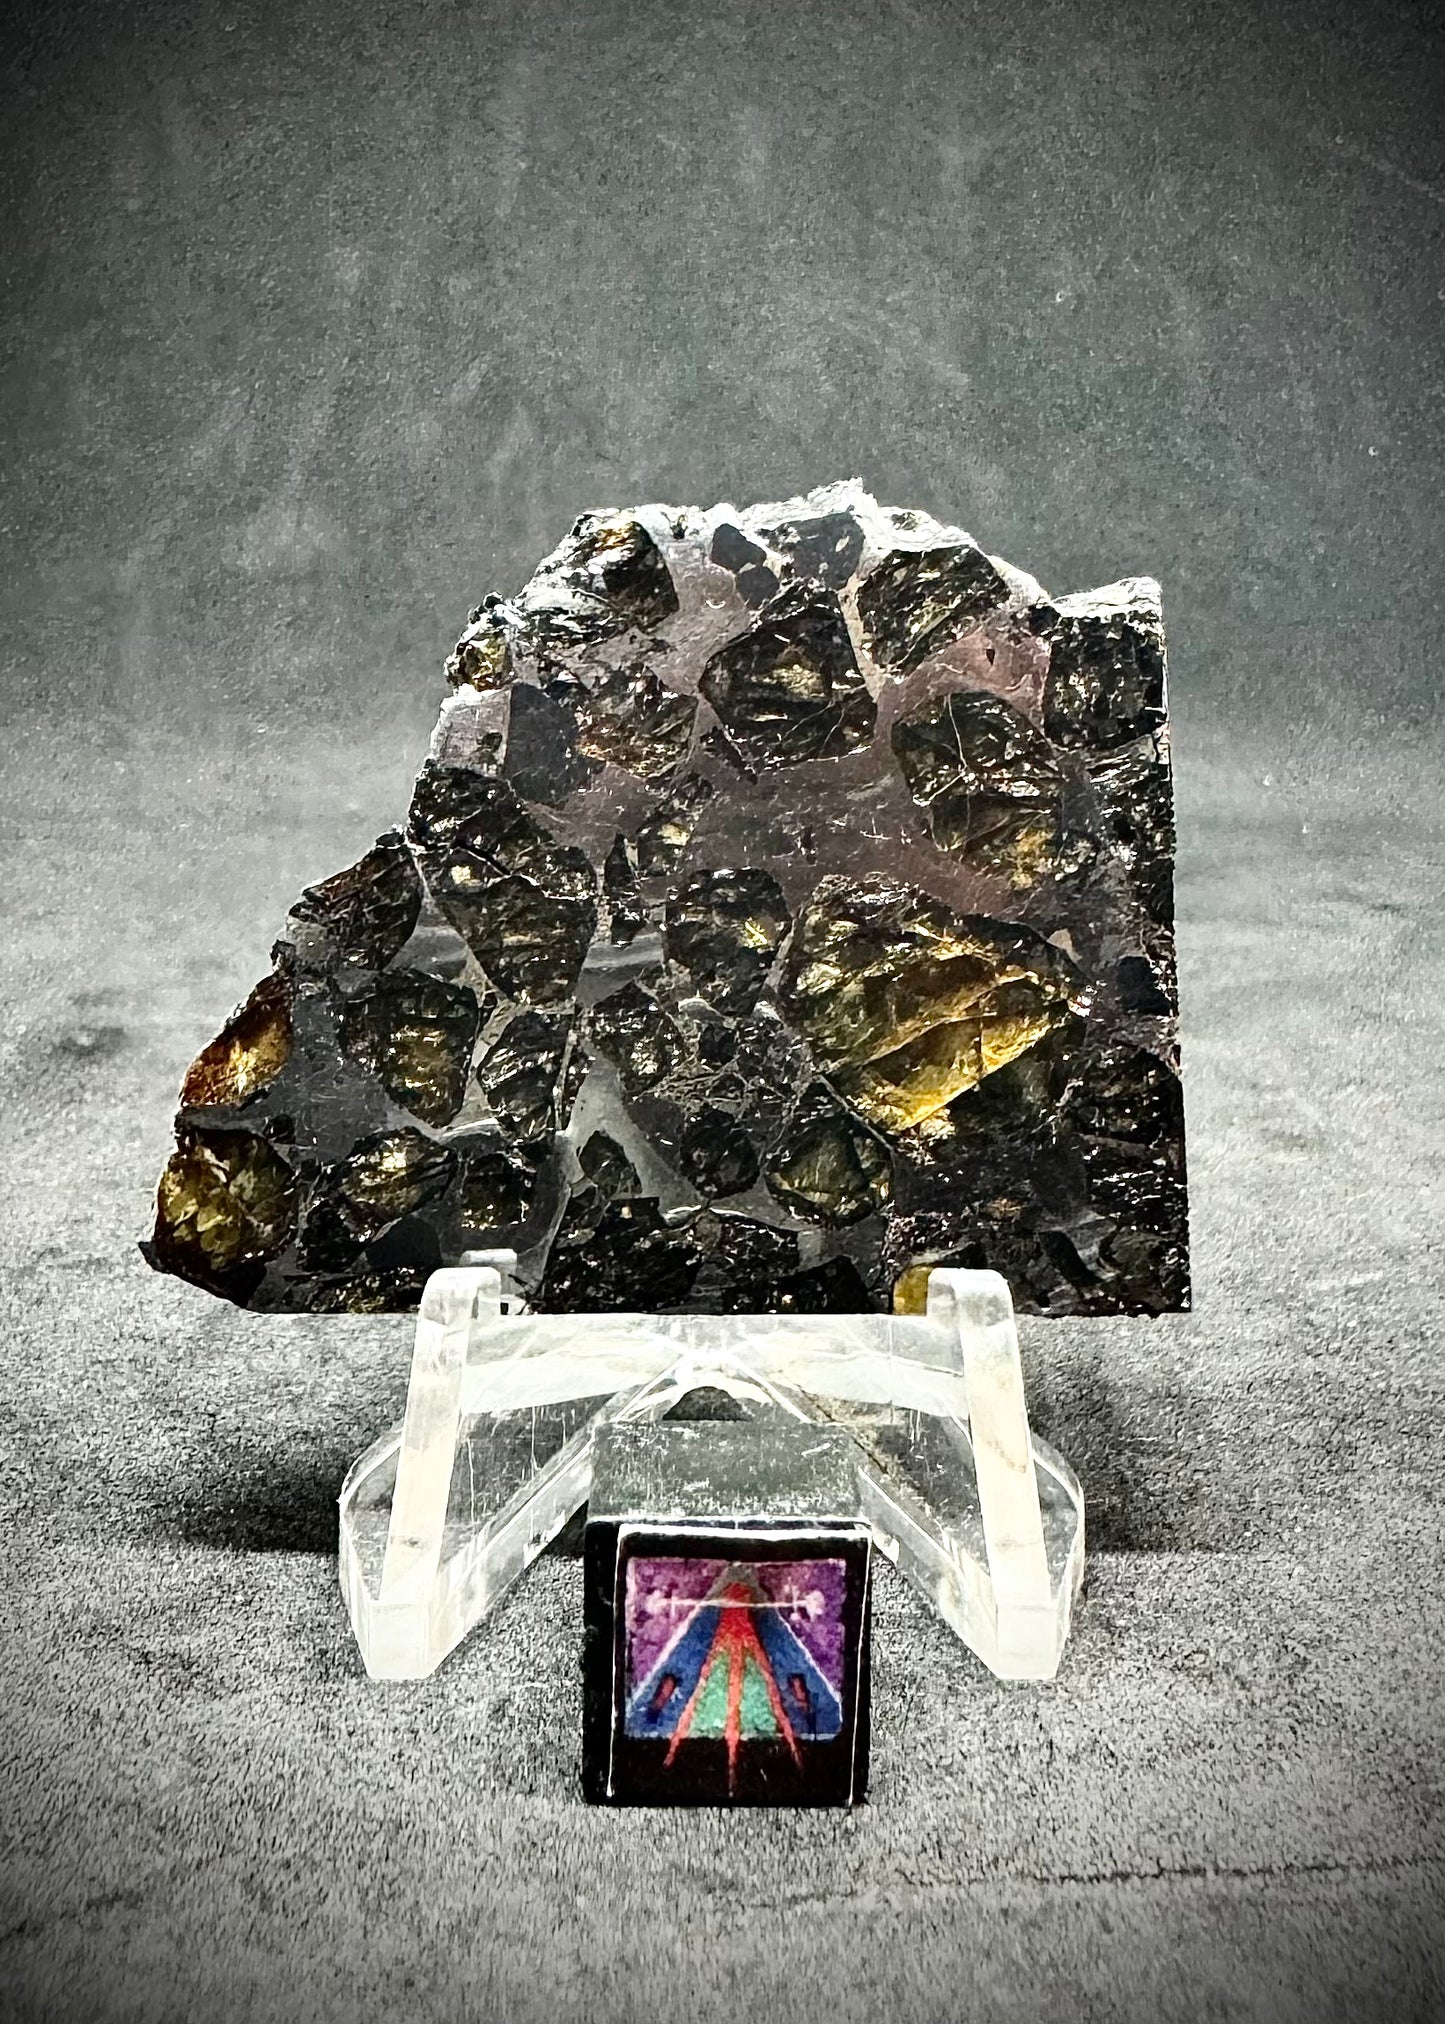 Brahin Pallasite Meteorite - 19.1g